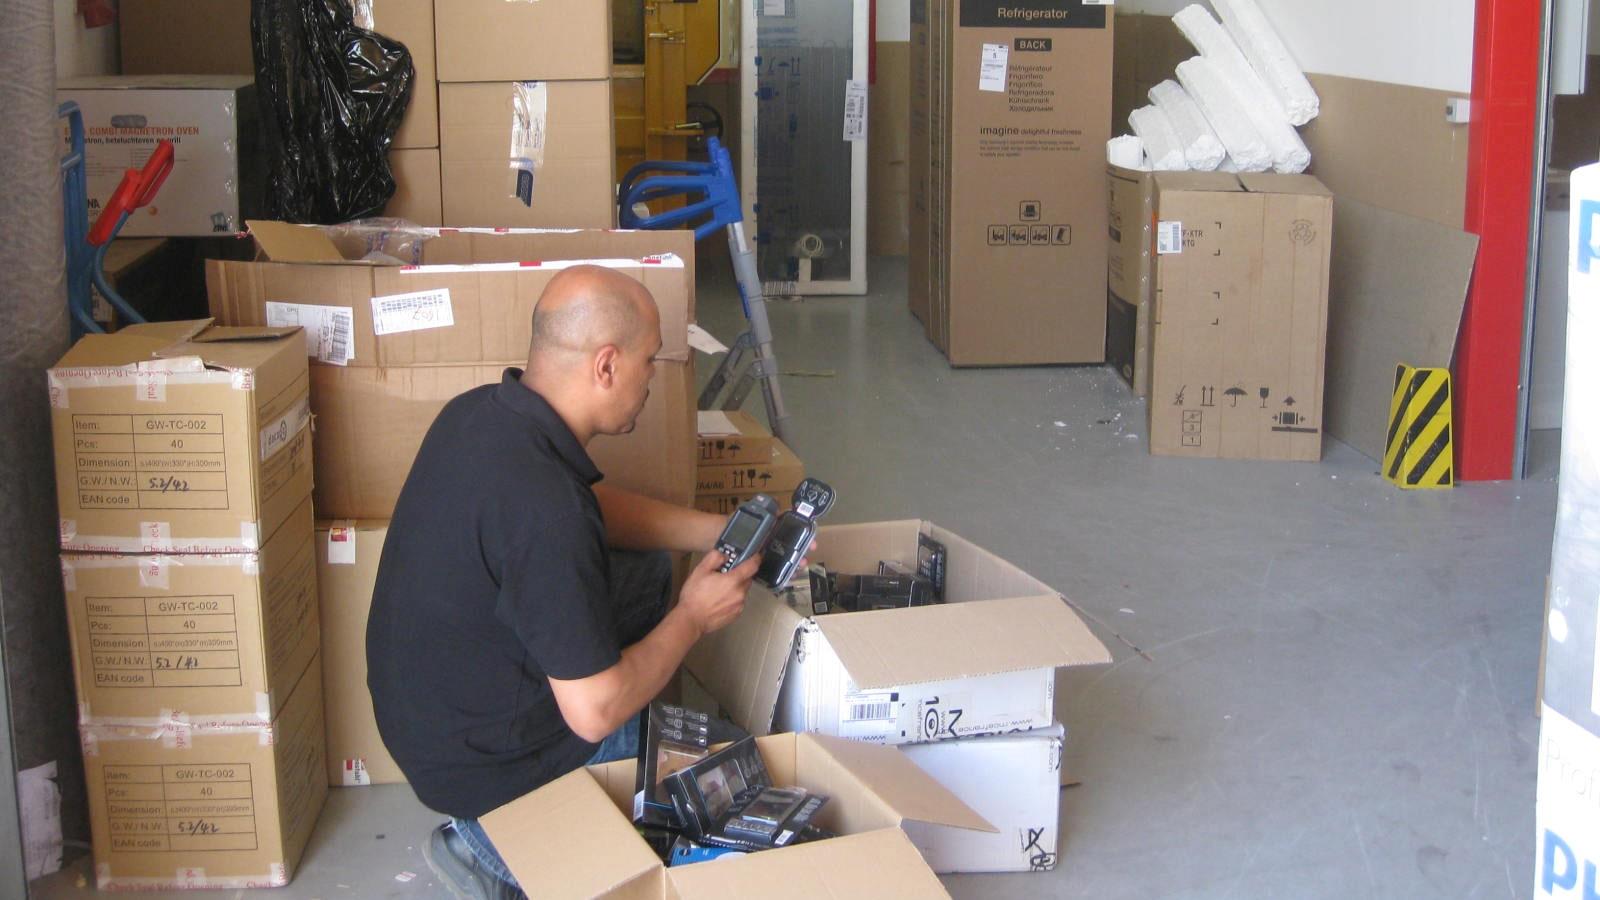 Un employé scanne puis enregistre l’arrivage de marchandise dans un entrepôt Media Markt